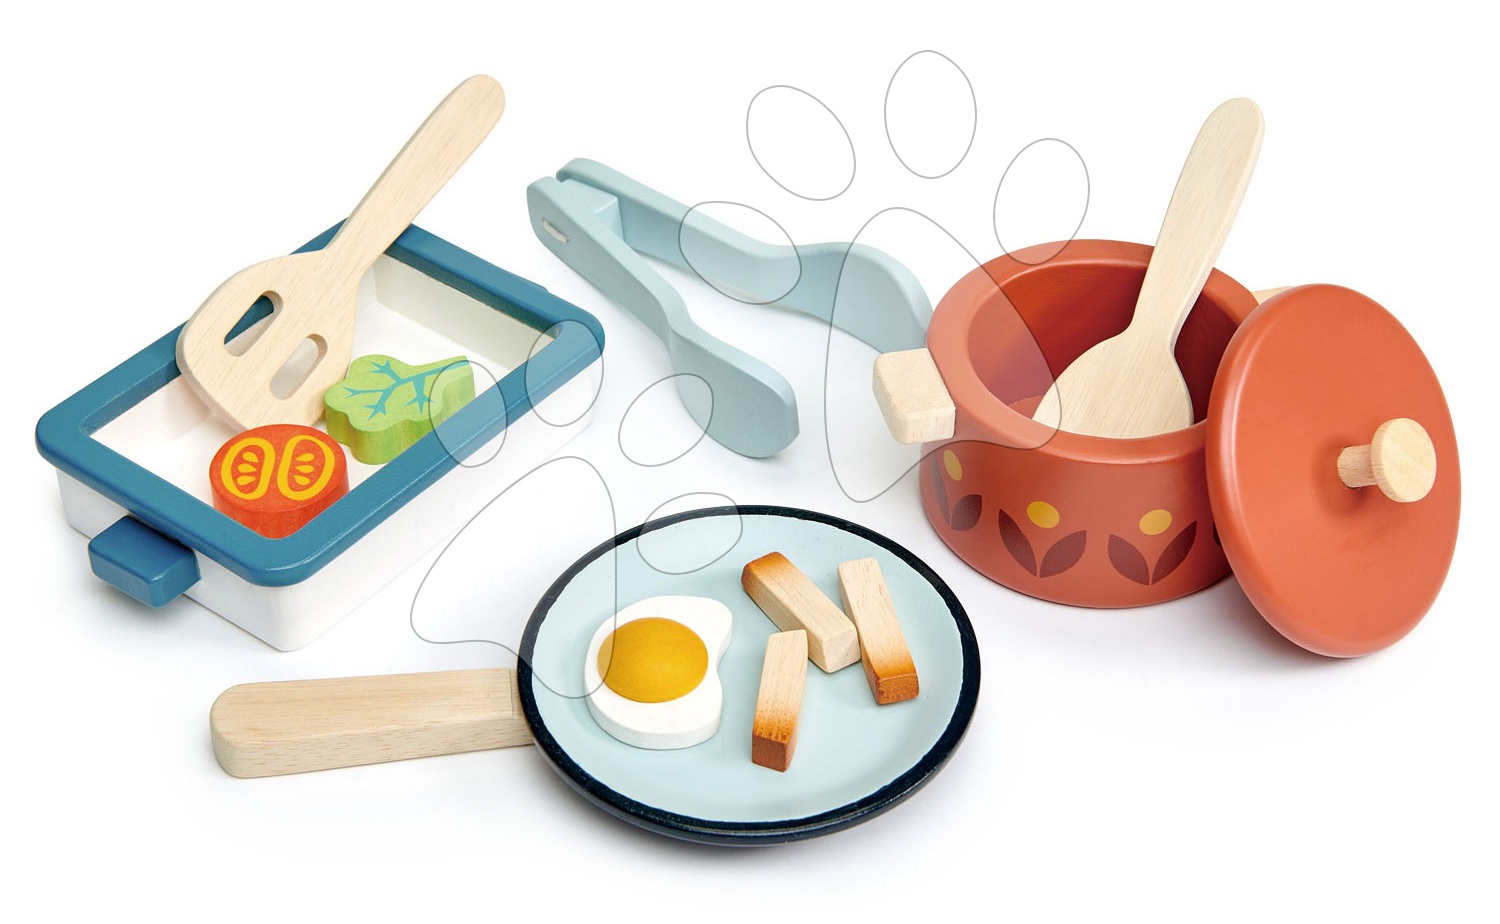 Dřevěné nádobí s pánví Pots and Pans Tender Leaf Toys s vařečkou a potravinami